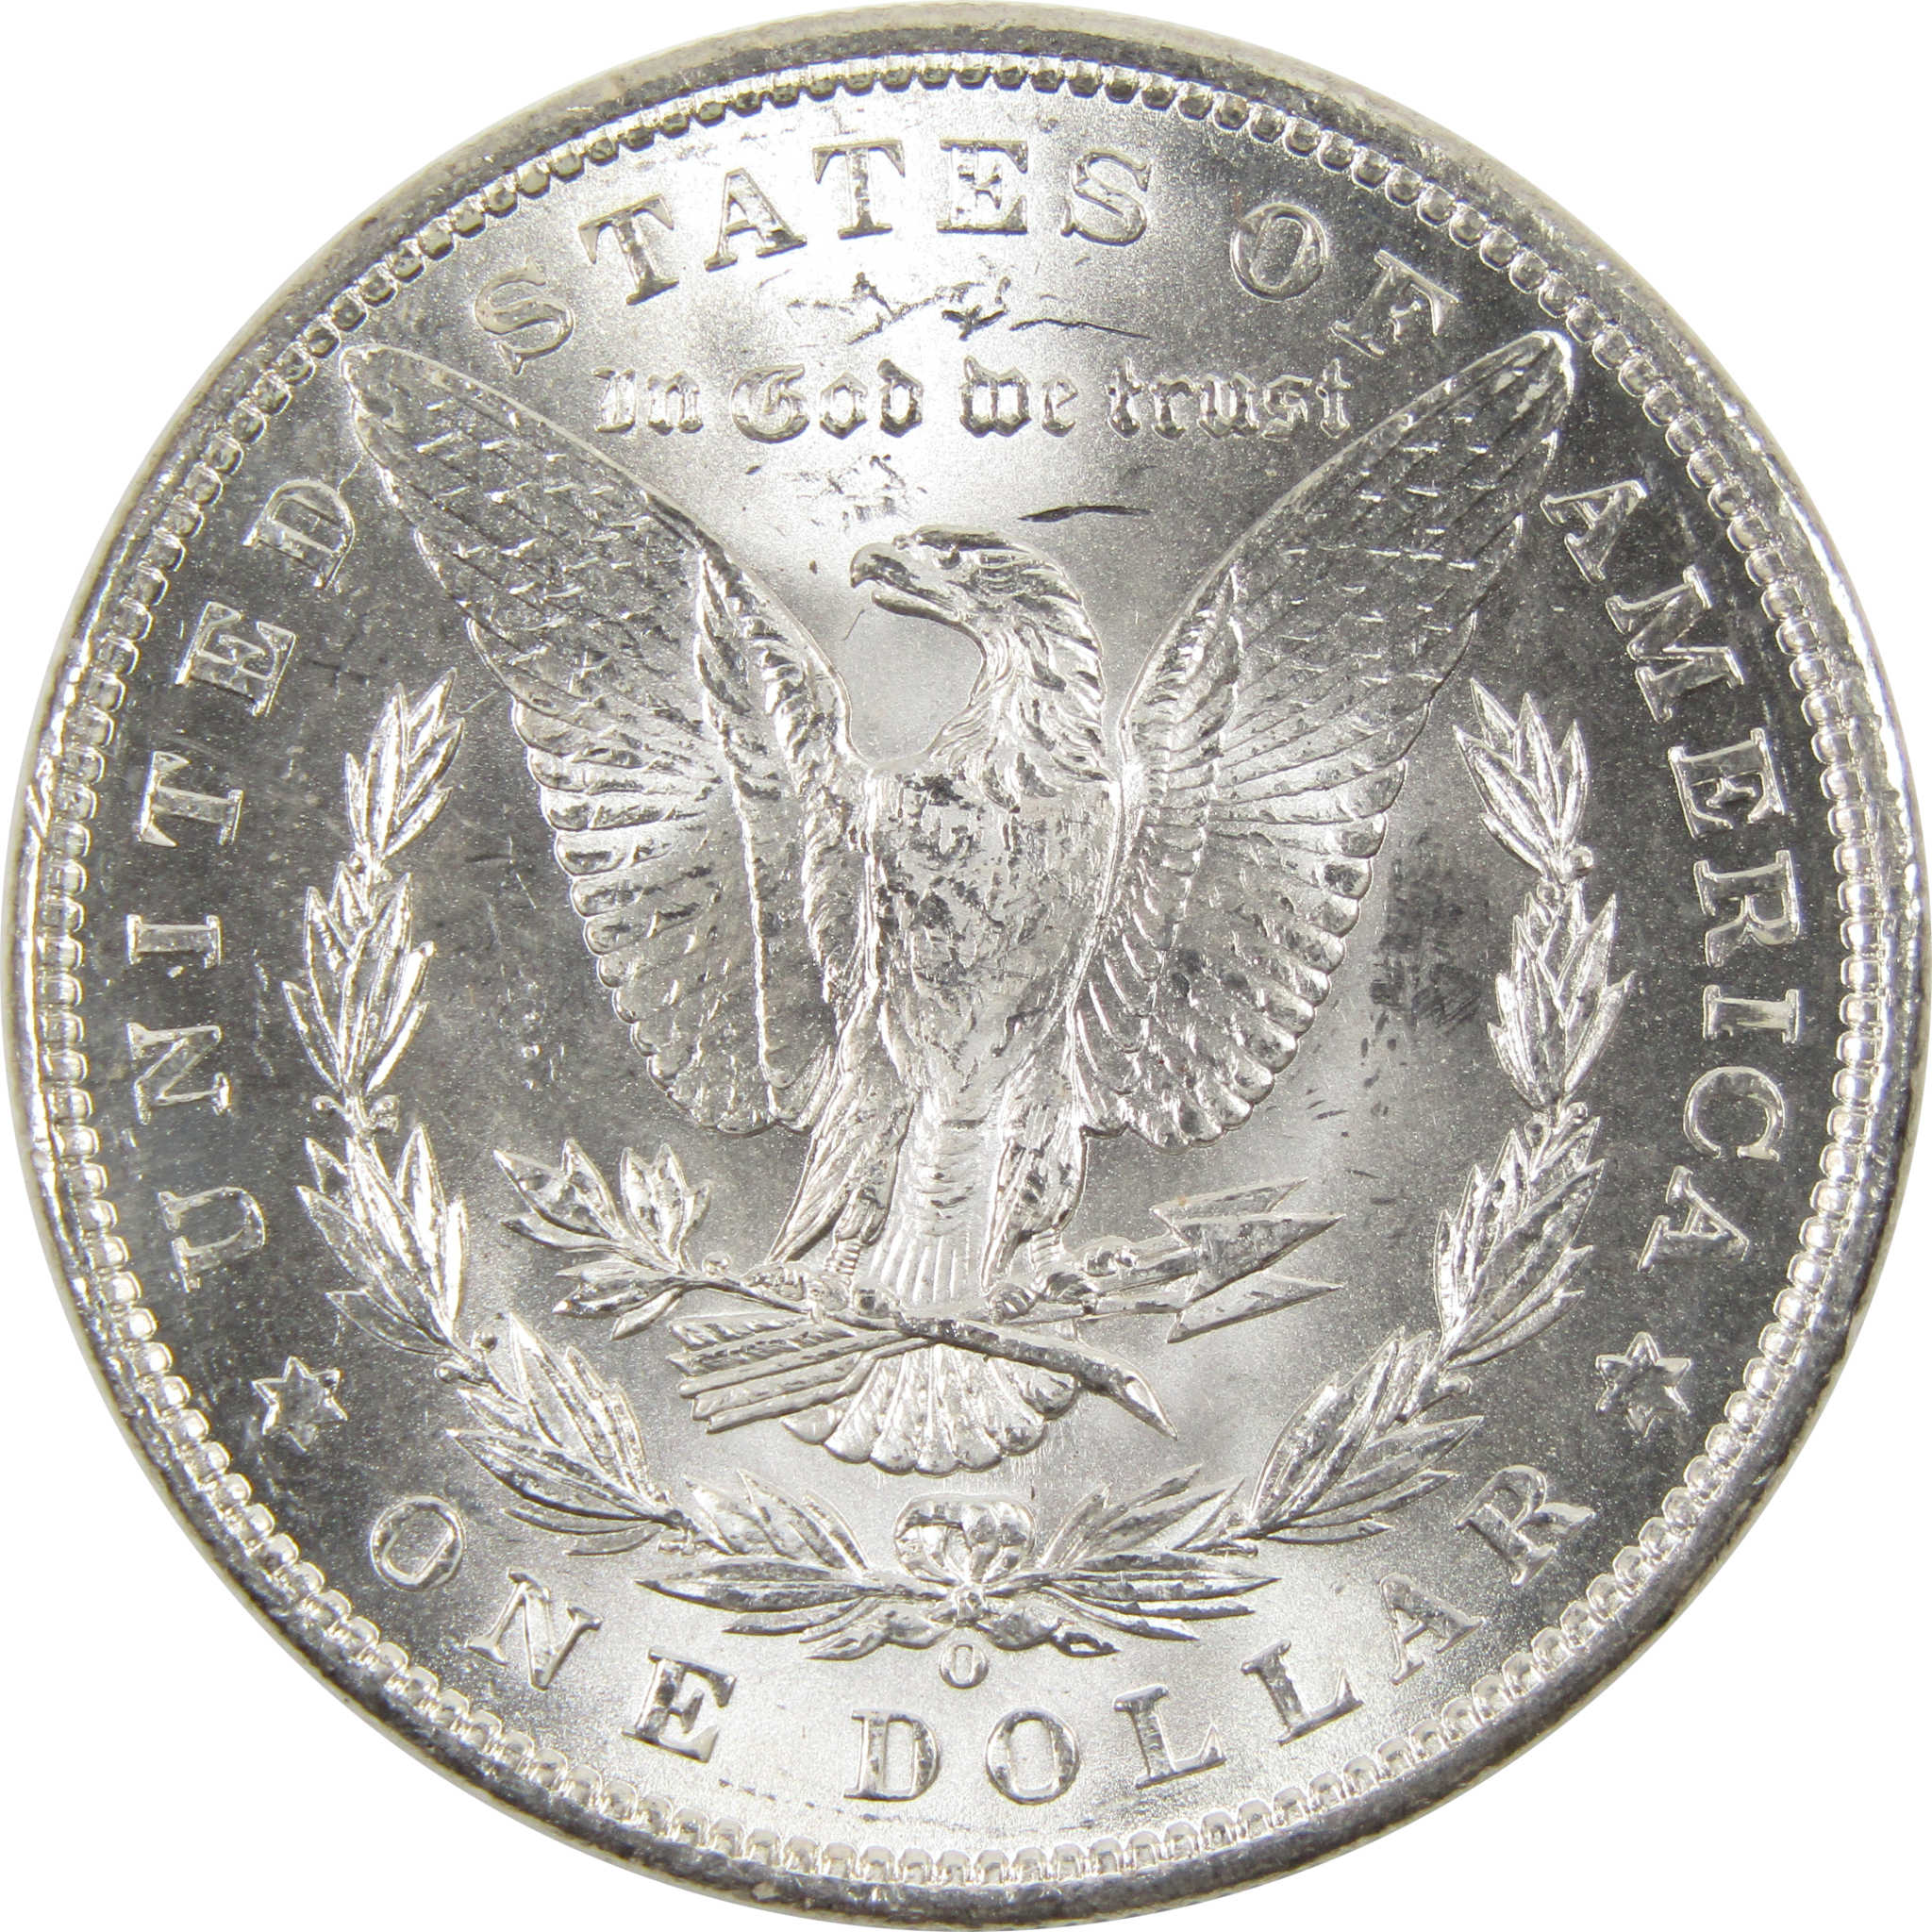 1898 O Morgan Dollar BU Uncirculated 90% Silver $1 Coin - Morgan coin - Morgan silver dollar - Morgan silver dollar for sale - Profile Coins &amp; Collectibles